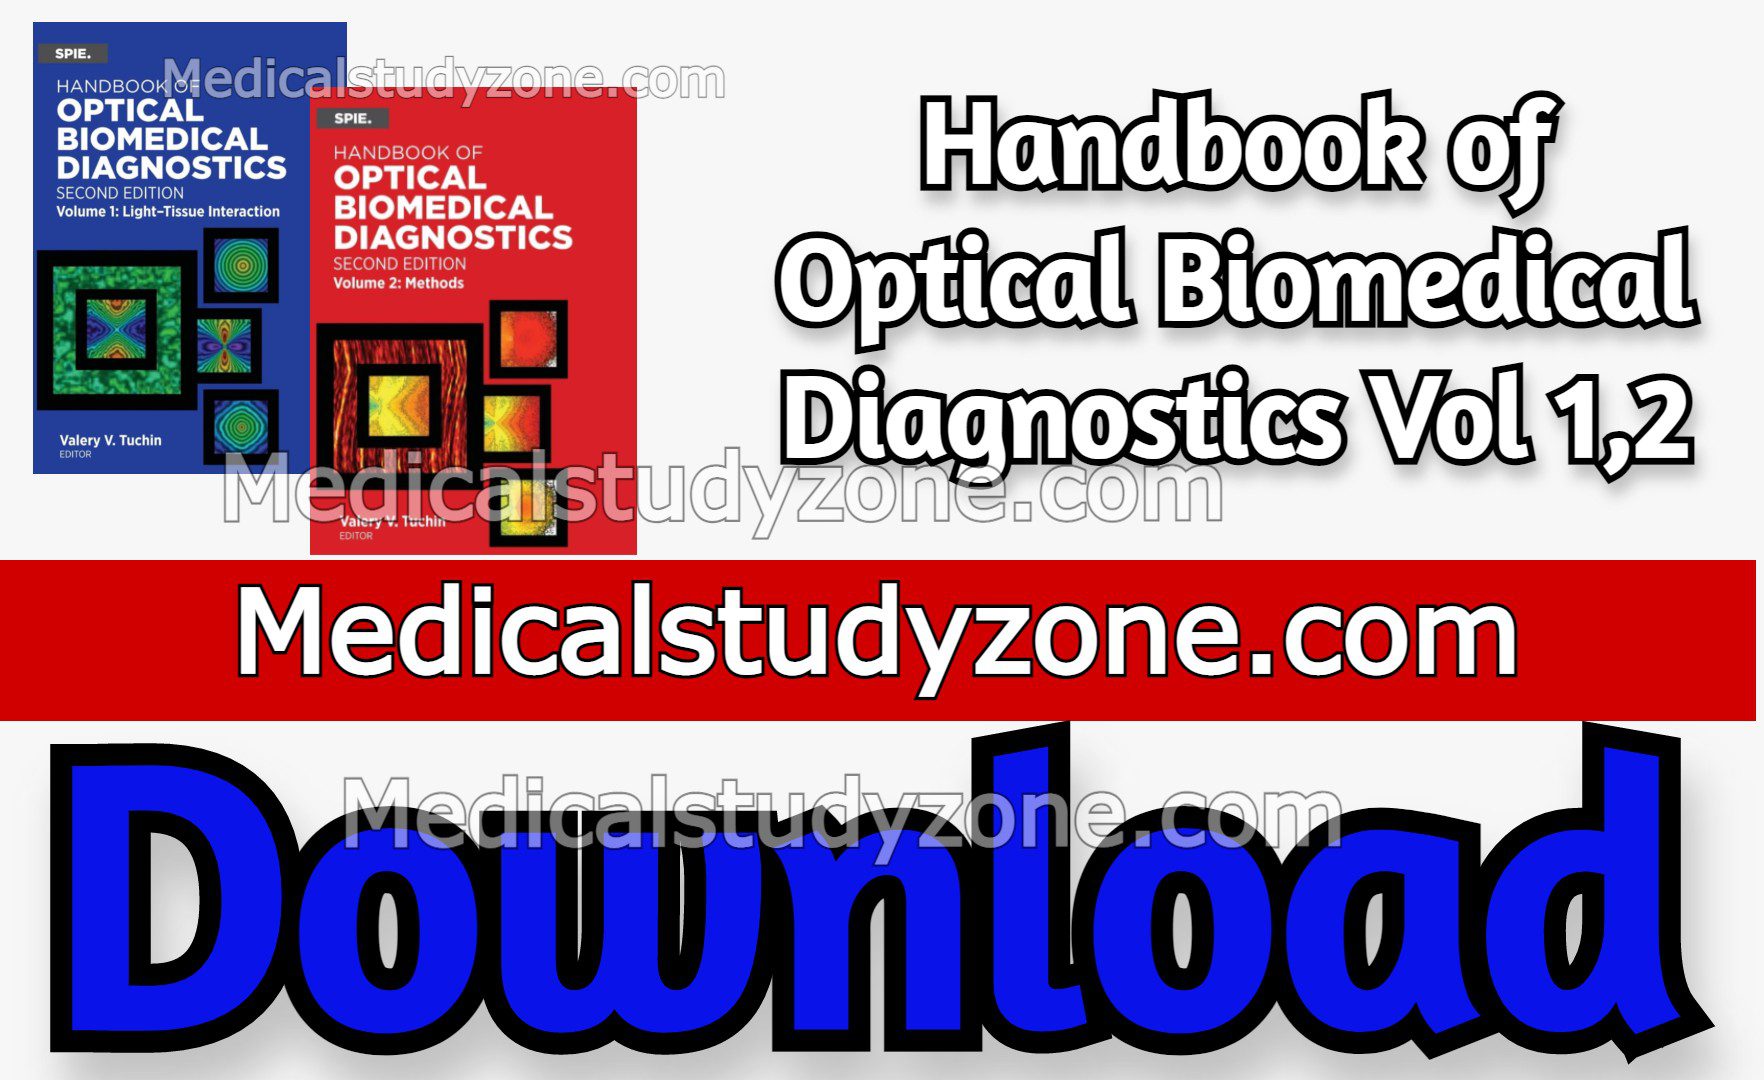 Handbook of Optical Biomedical Diagnostics Vol 1,2 PDF Free Download